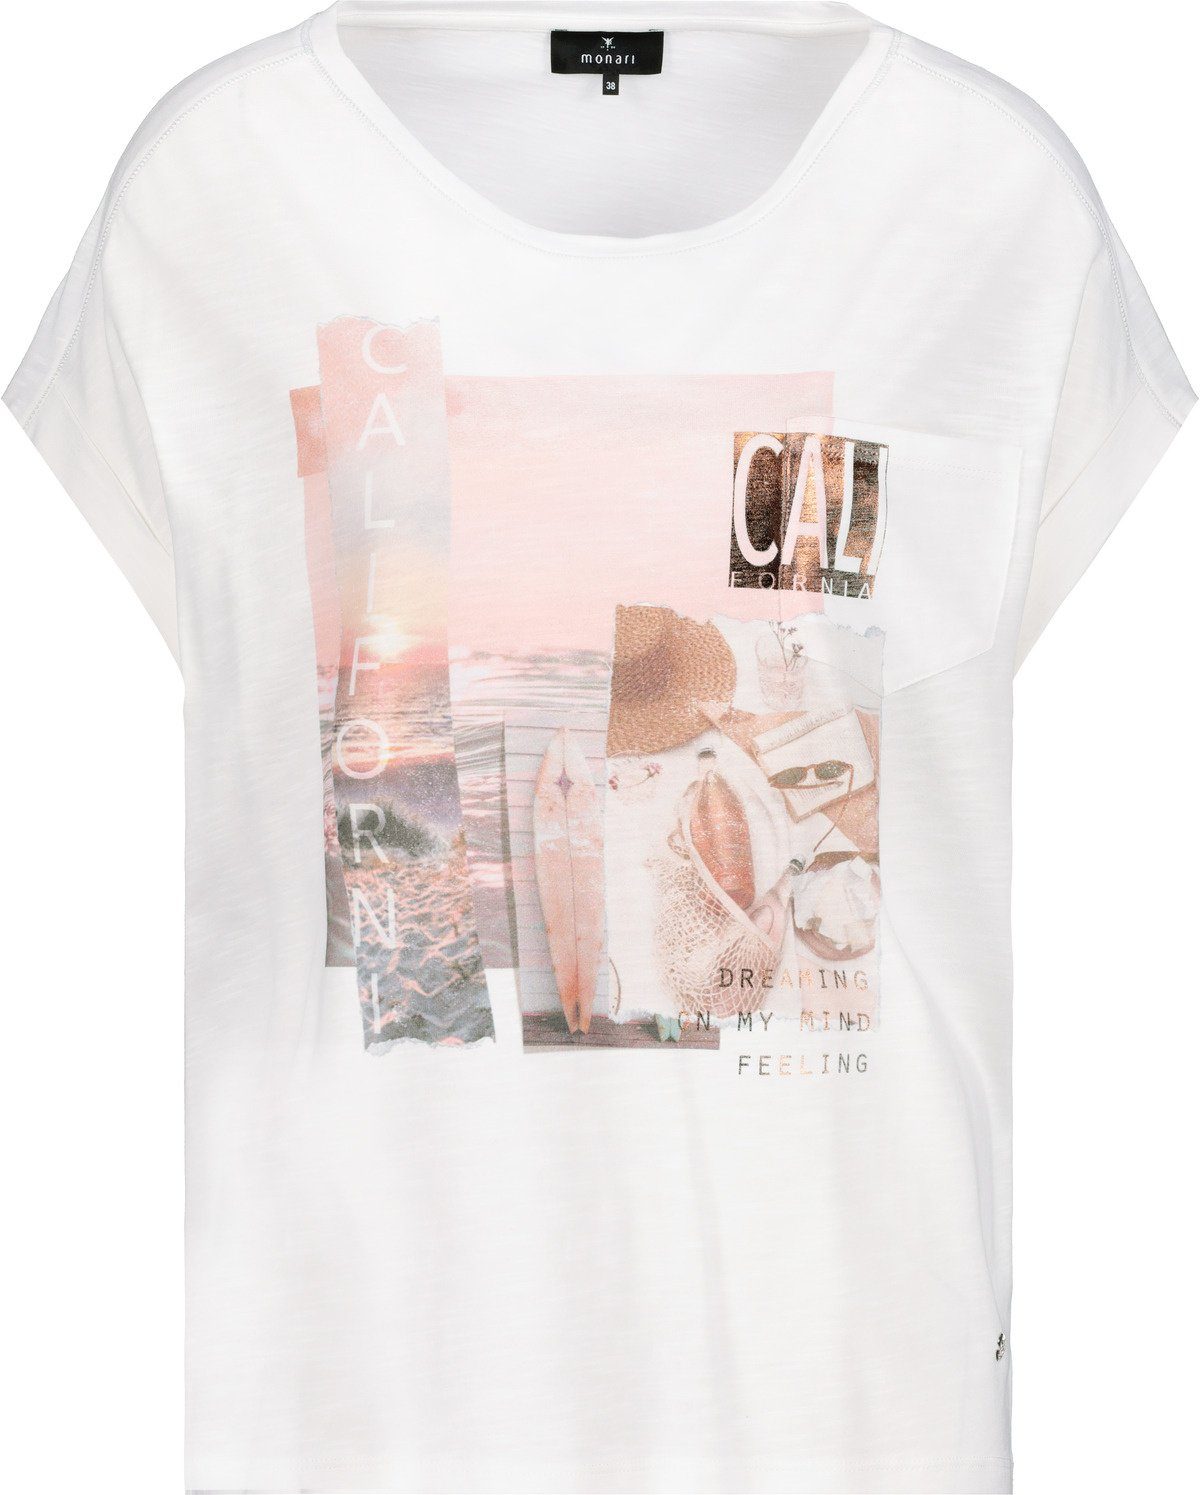 Rundhals mit Flammgarn T-Shirt Print Monari T-Shirt in Off-White und